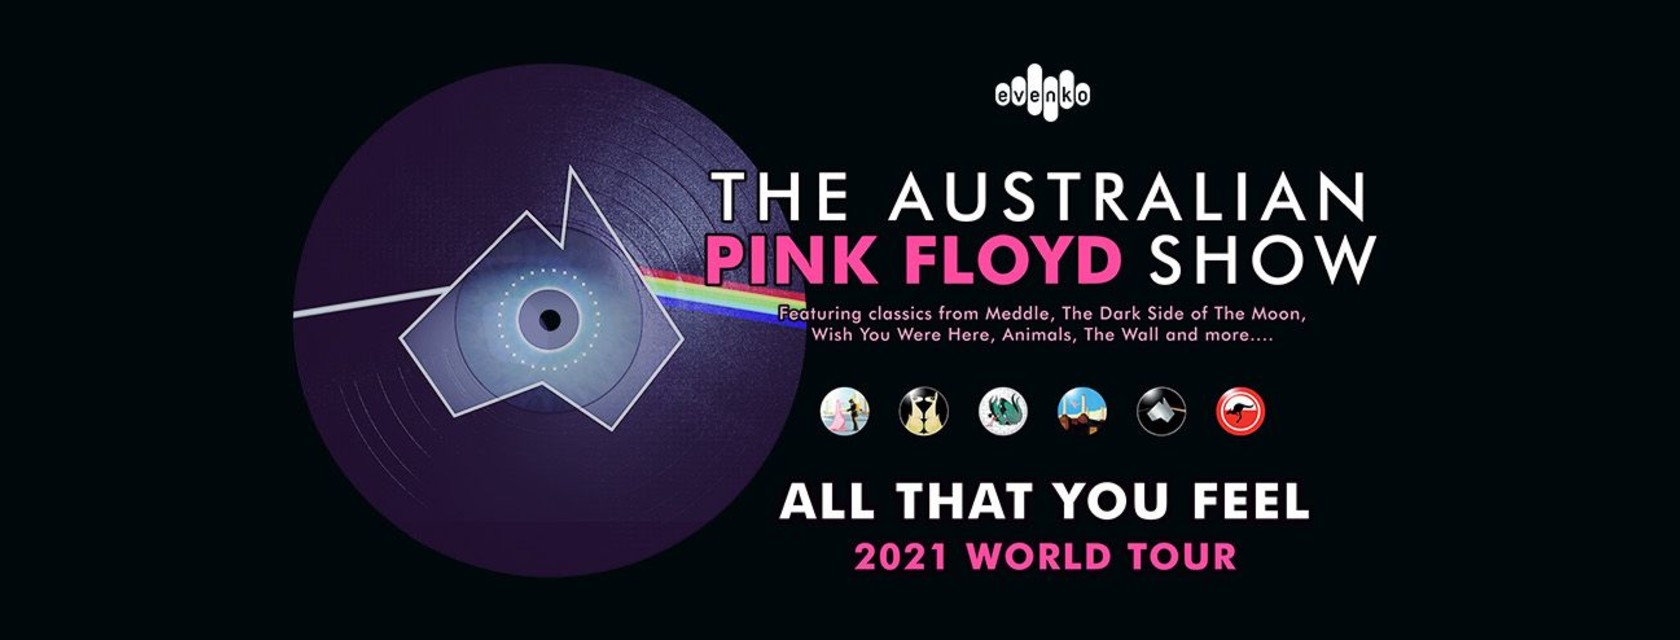 The Australian Pink Floyd Show reporté en 2021